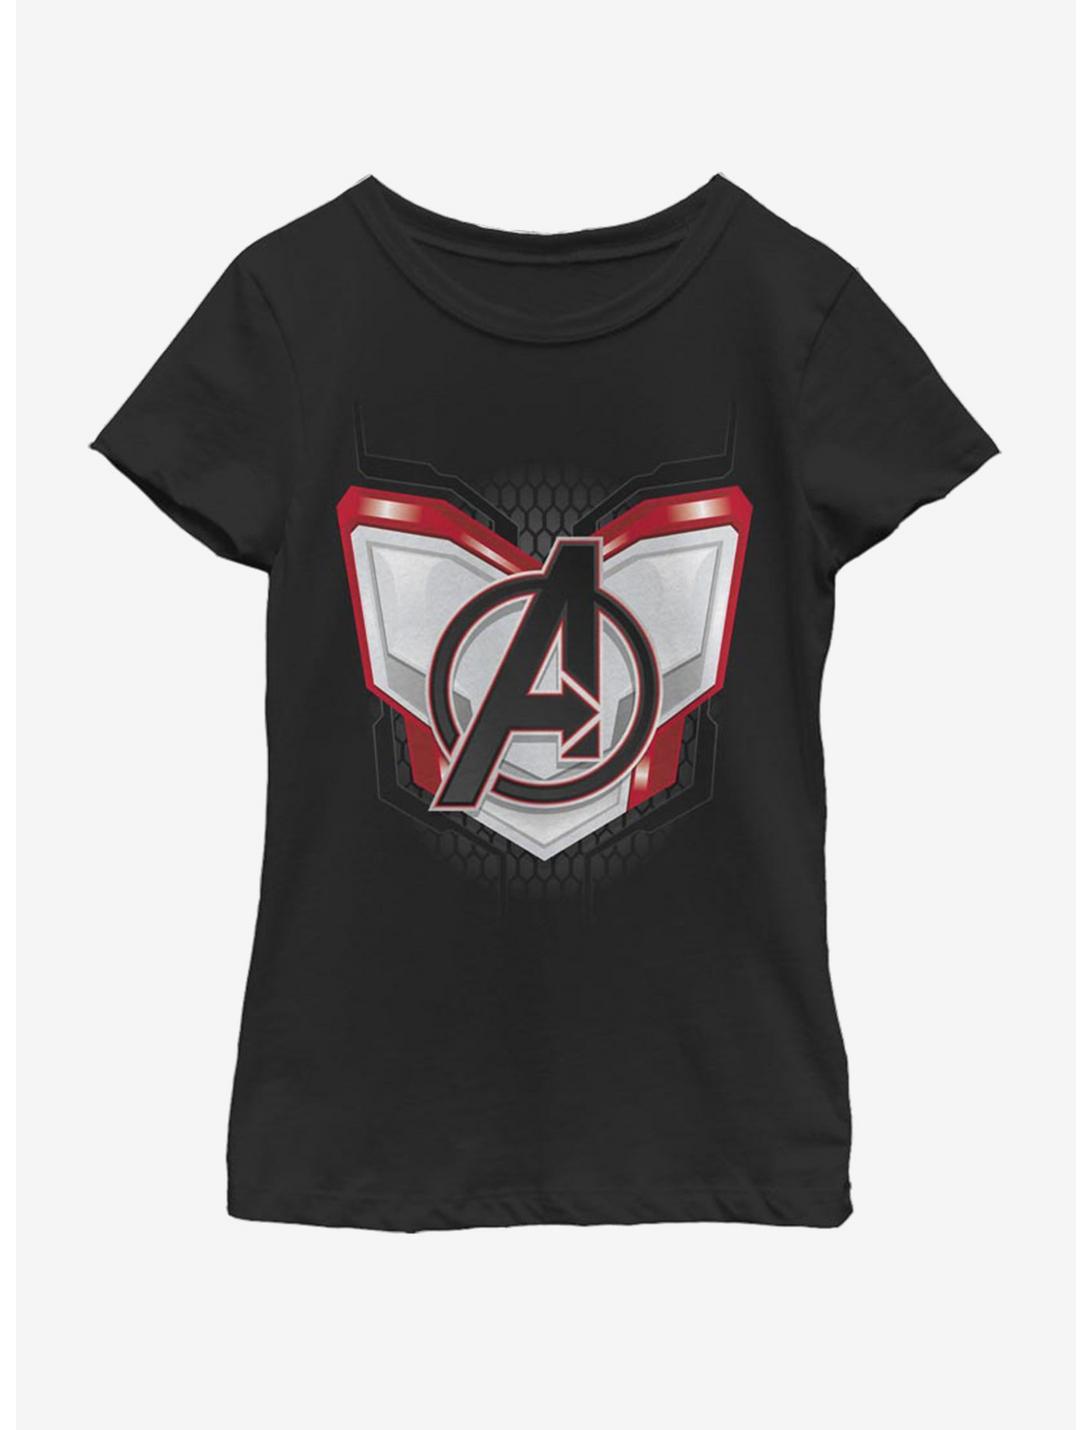 Marvel Avengers: Endgame Endgame Logo Armor Youth Girls T-Shirt, BLACK, hi-res